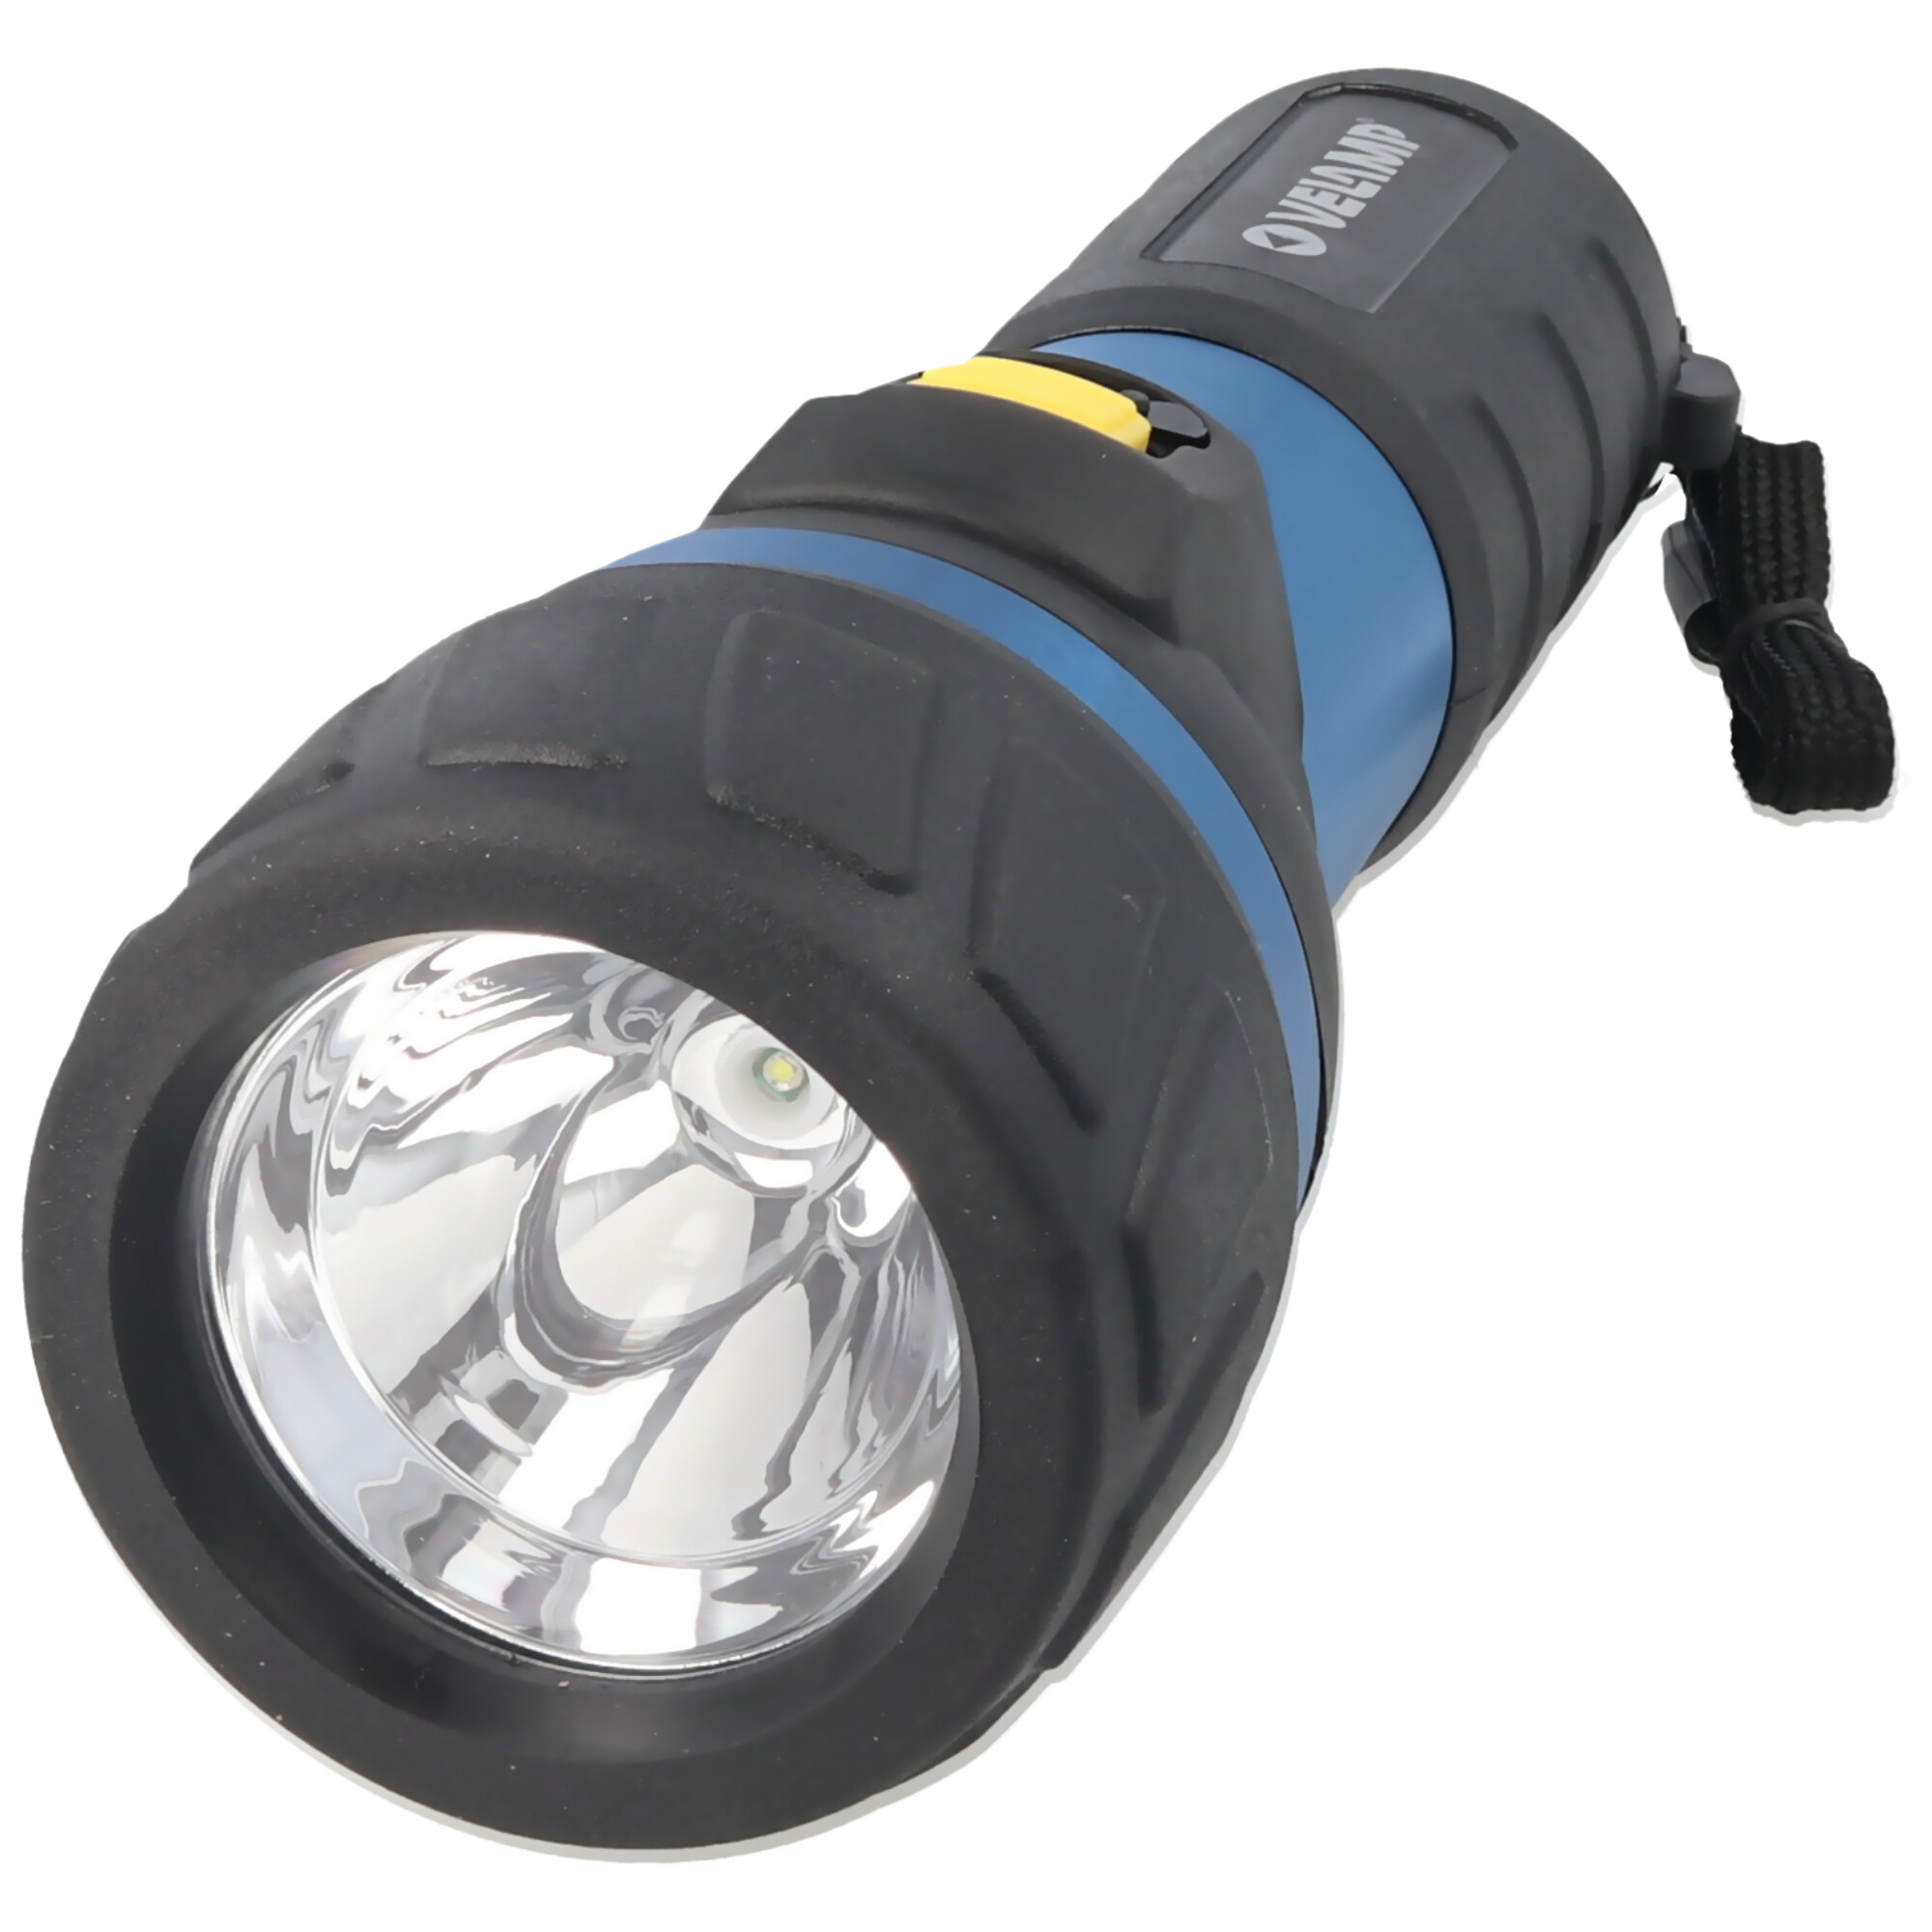 LED-Taschenlampe High Power LED mit 110 Lumen, 3W, wasser- und stoßfest, inklusive Batterien 2x D